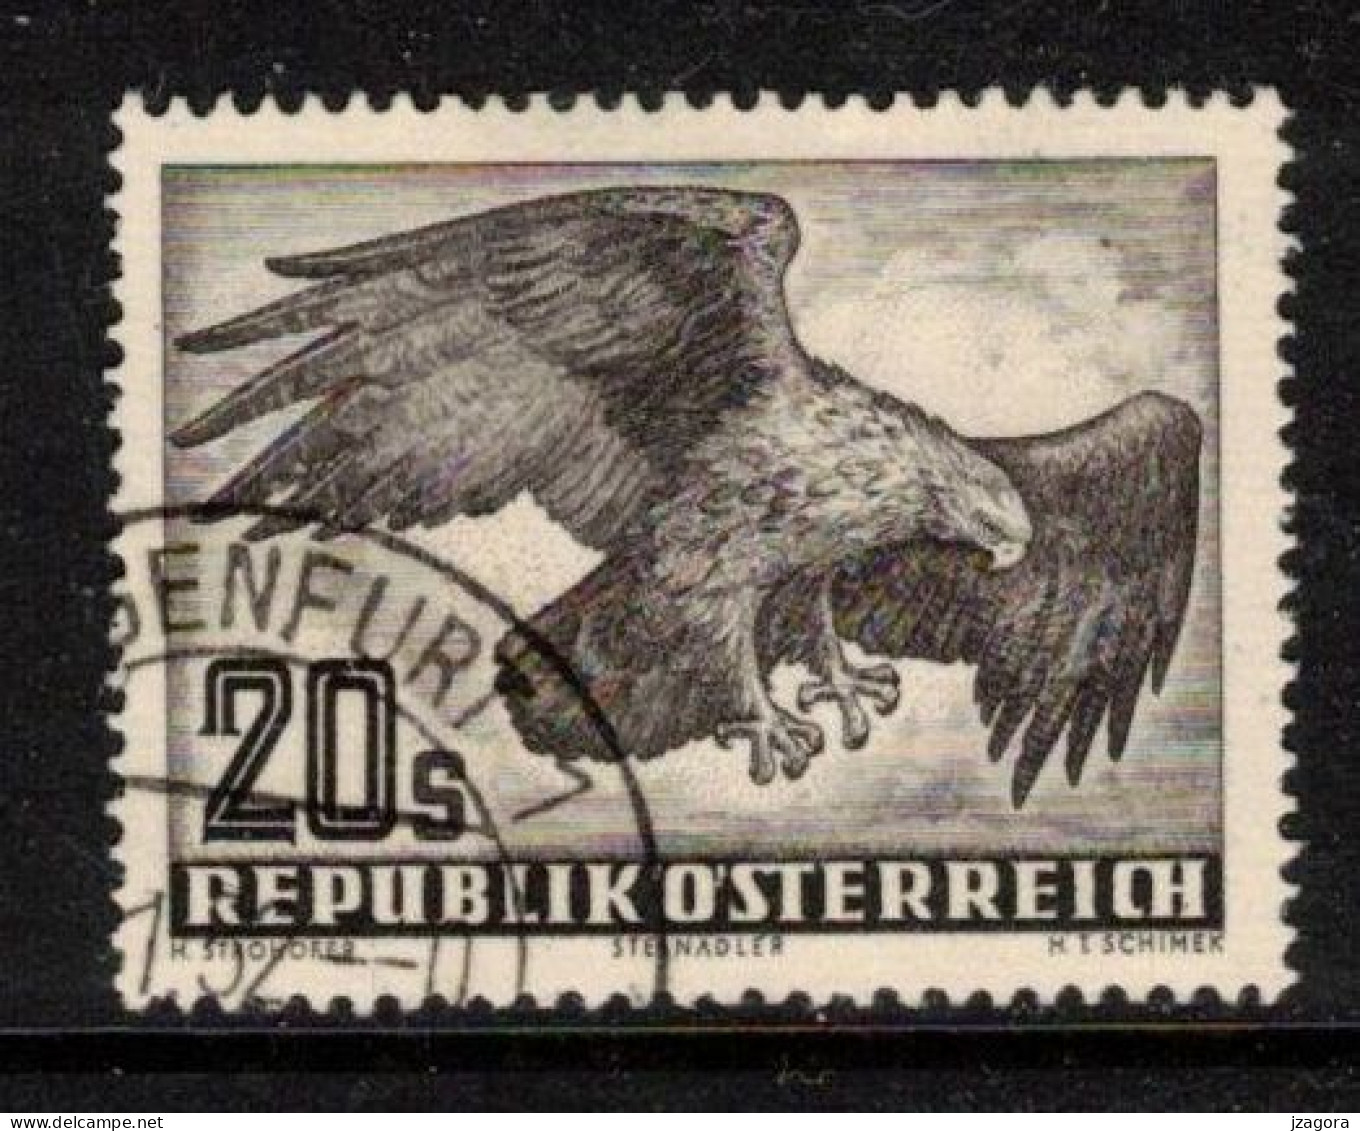 BIRDS EAGLE VÖGEL ADLER OISEAUX AIGLE AUSTRIA ÖSTERREICH AUTRICHE 1952 MI 968 ANK 973 YT PA60 SC C60  Air Mail Flugpost - Oblitérés